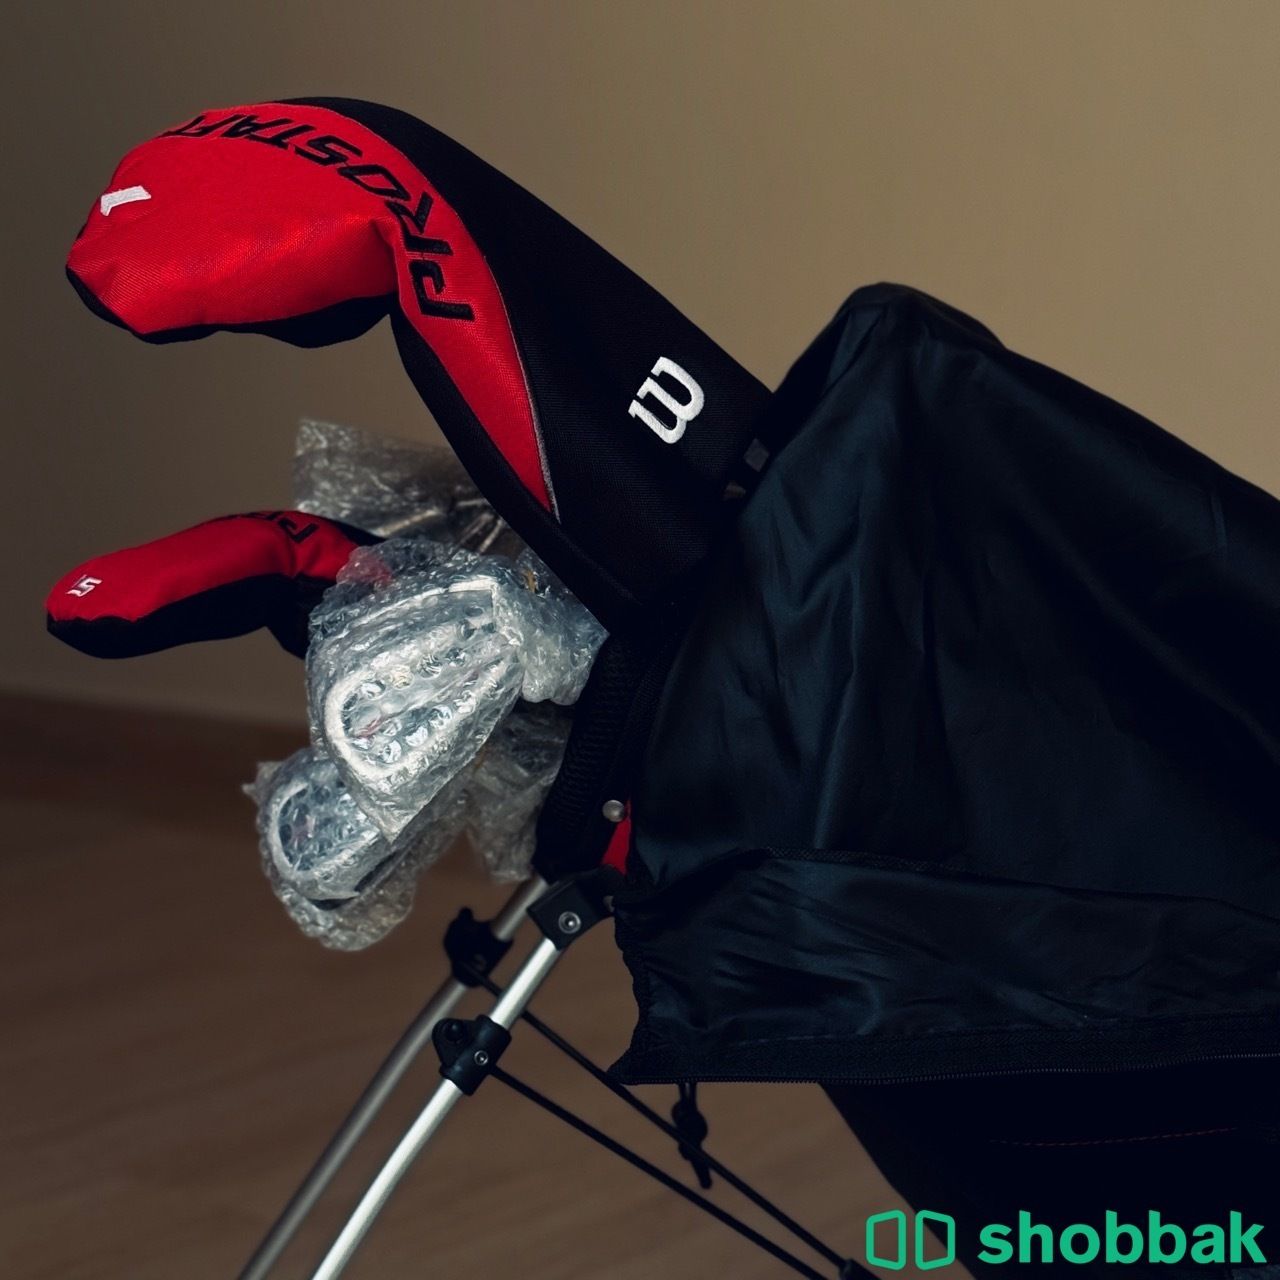 مجموعة القولف الكاملة - Golf Set  Shobbak Saudi Arabia